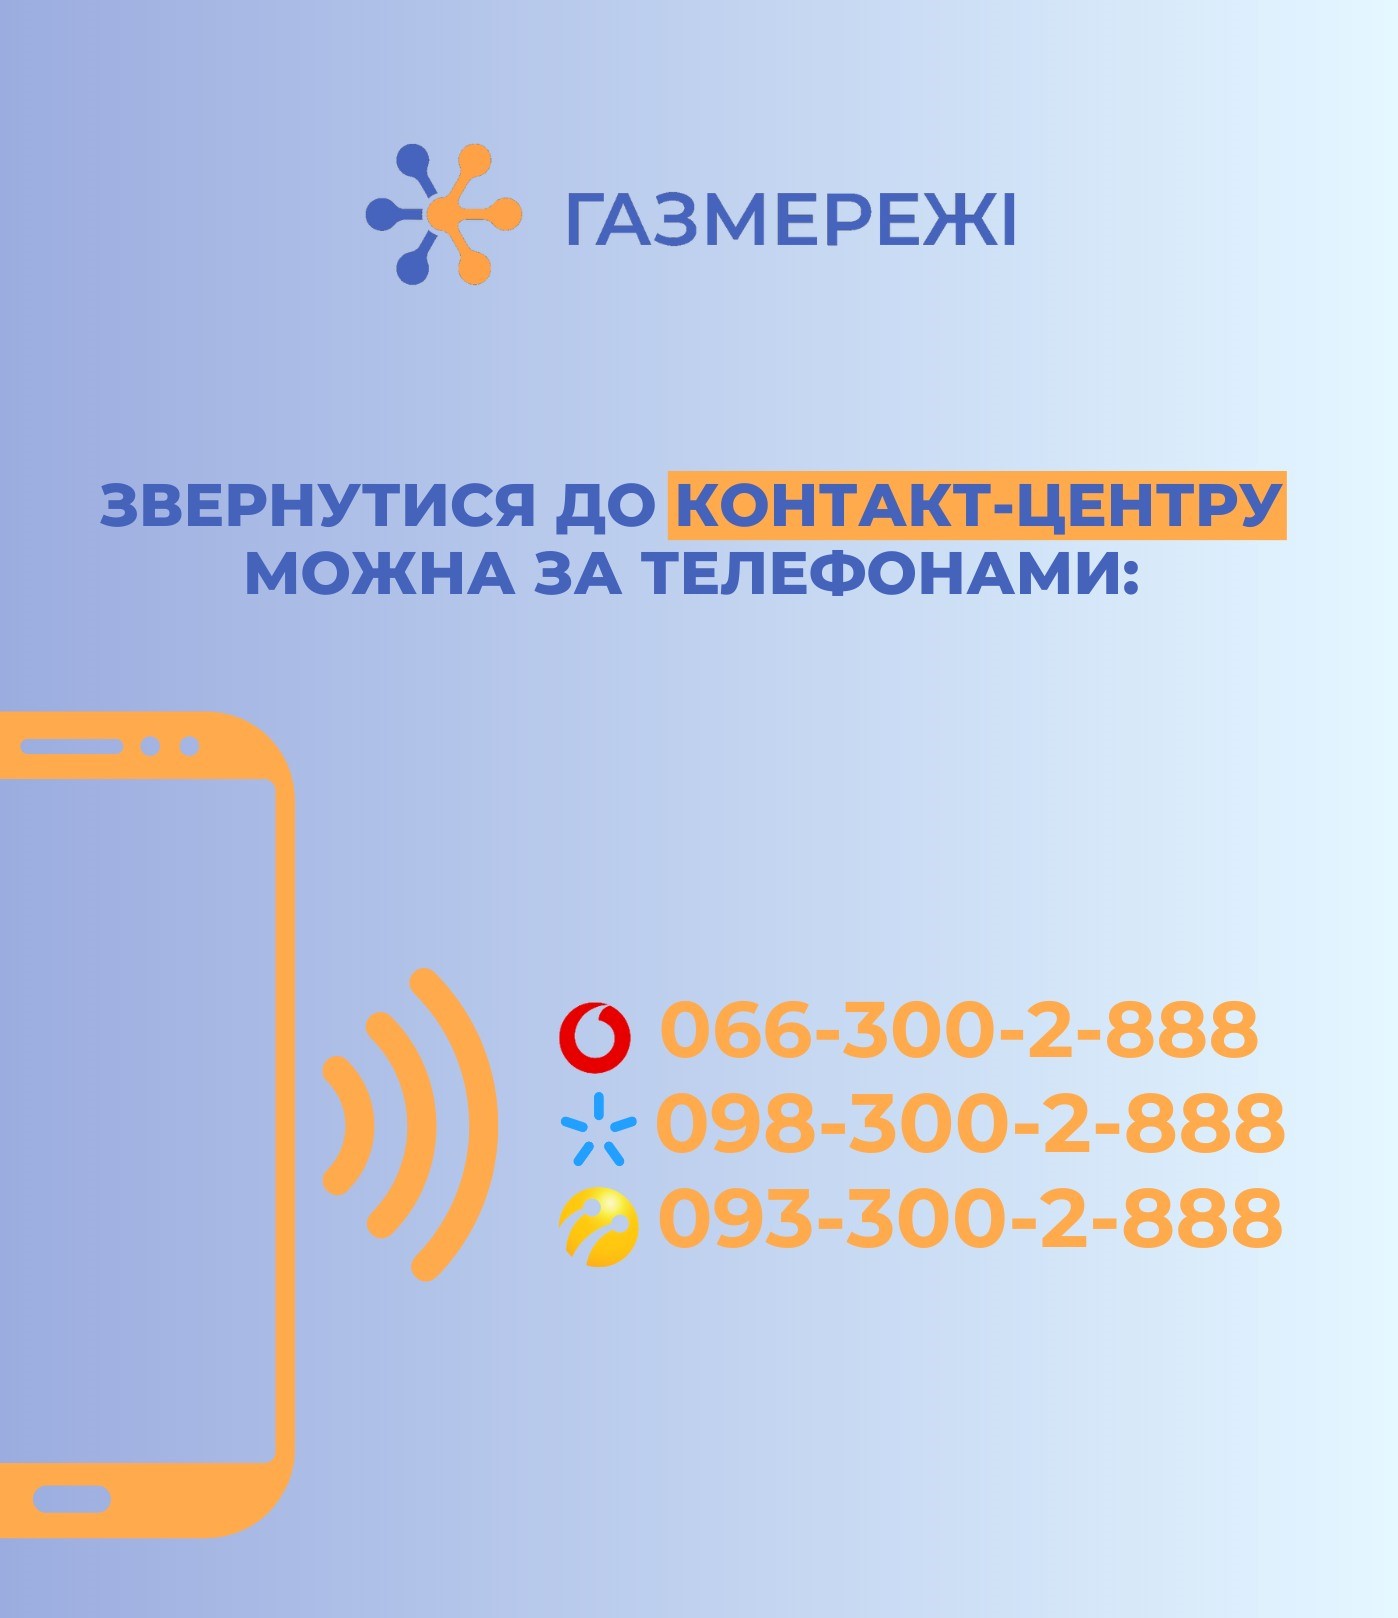 З початку року оператори Дніпропетровської філії «Газмережі» проконсультували онлайн 7,6 тис. споживачів області